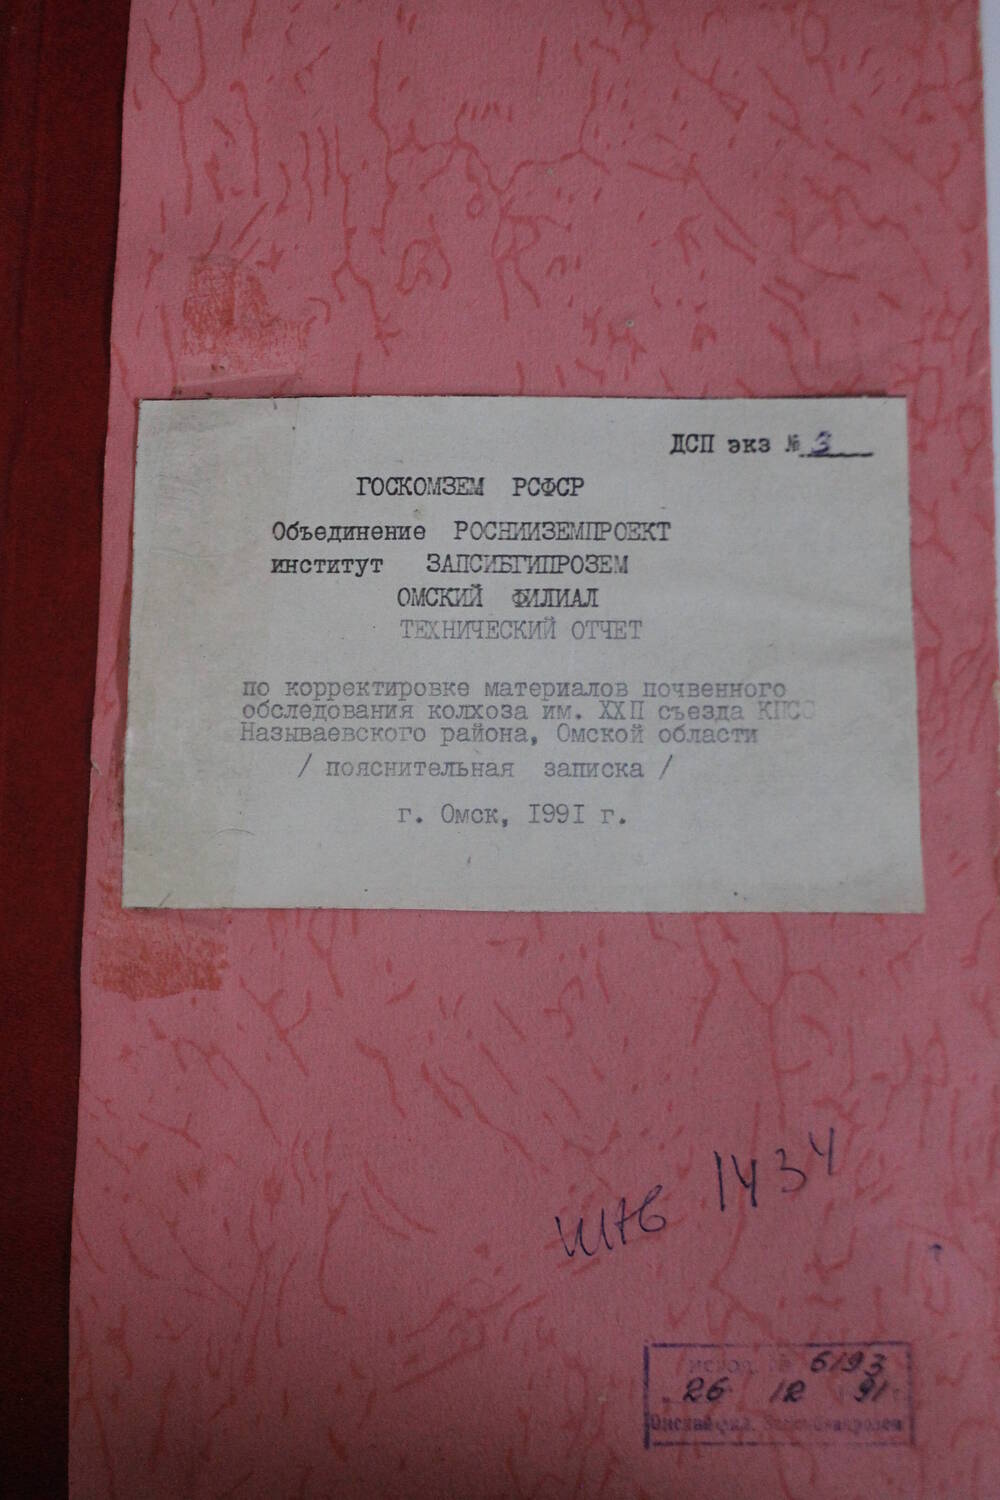 Технический отчет по корректировке материалов почвенного обследования колхоза ХХII съезда КПСС